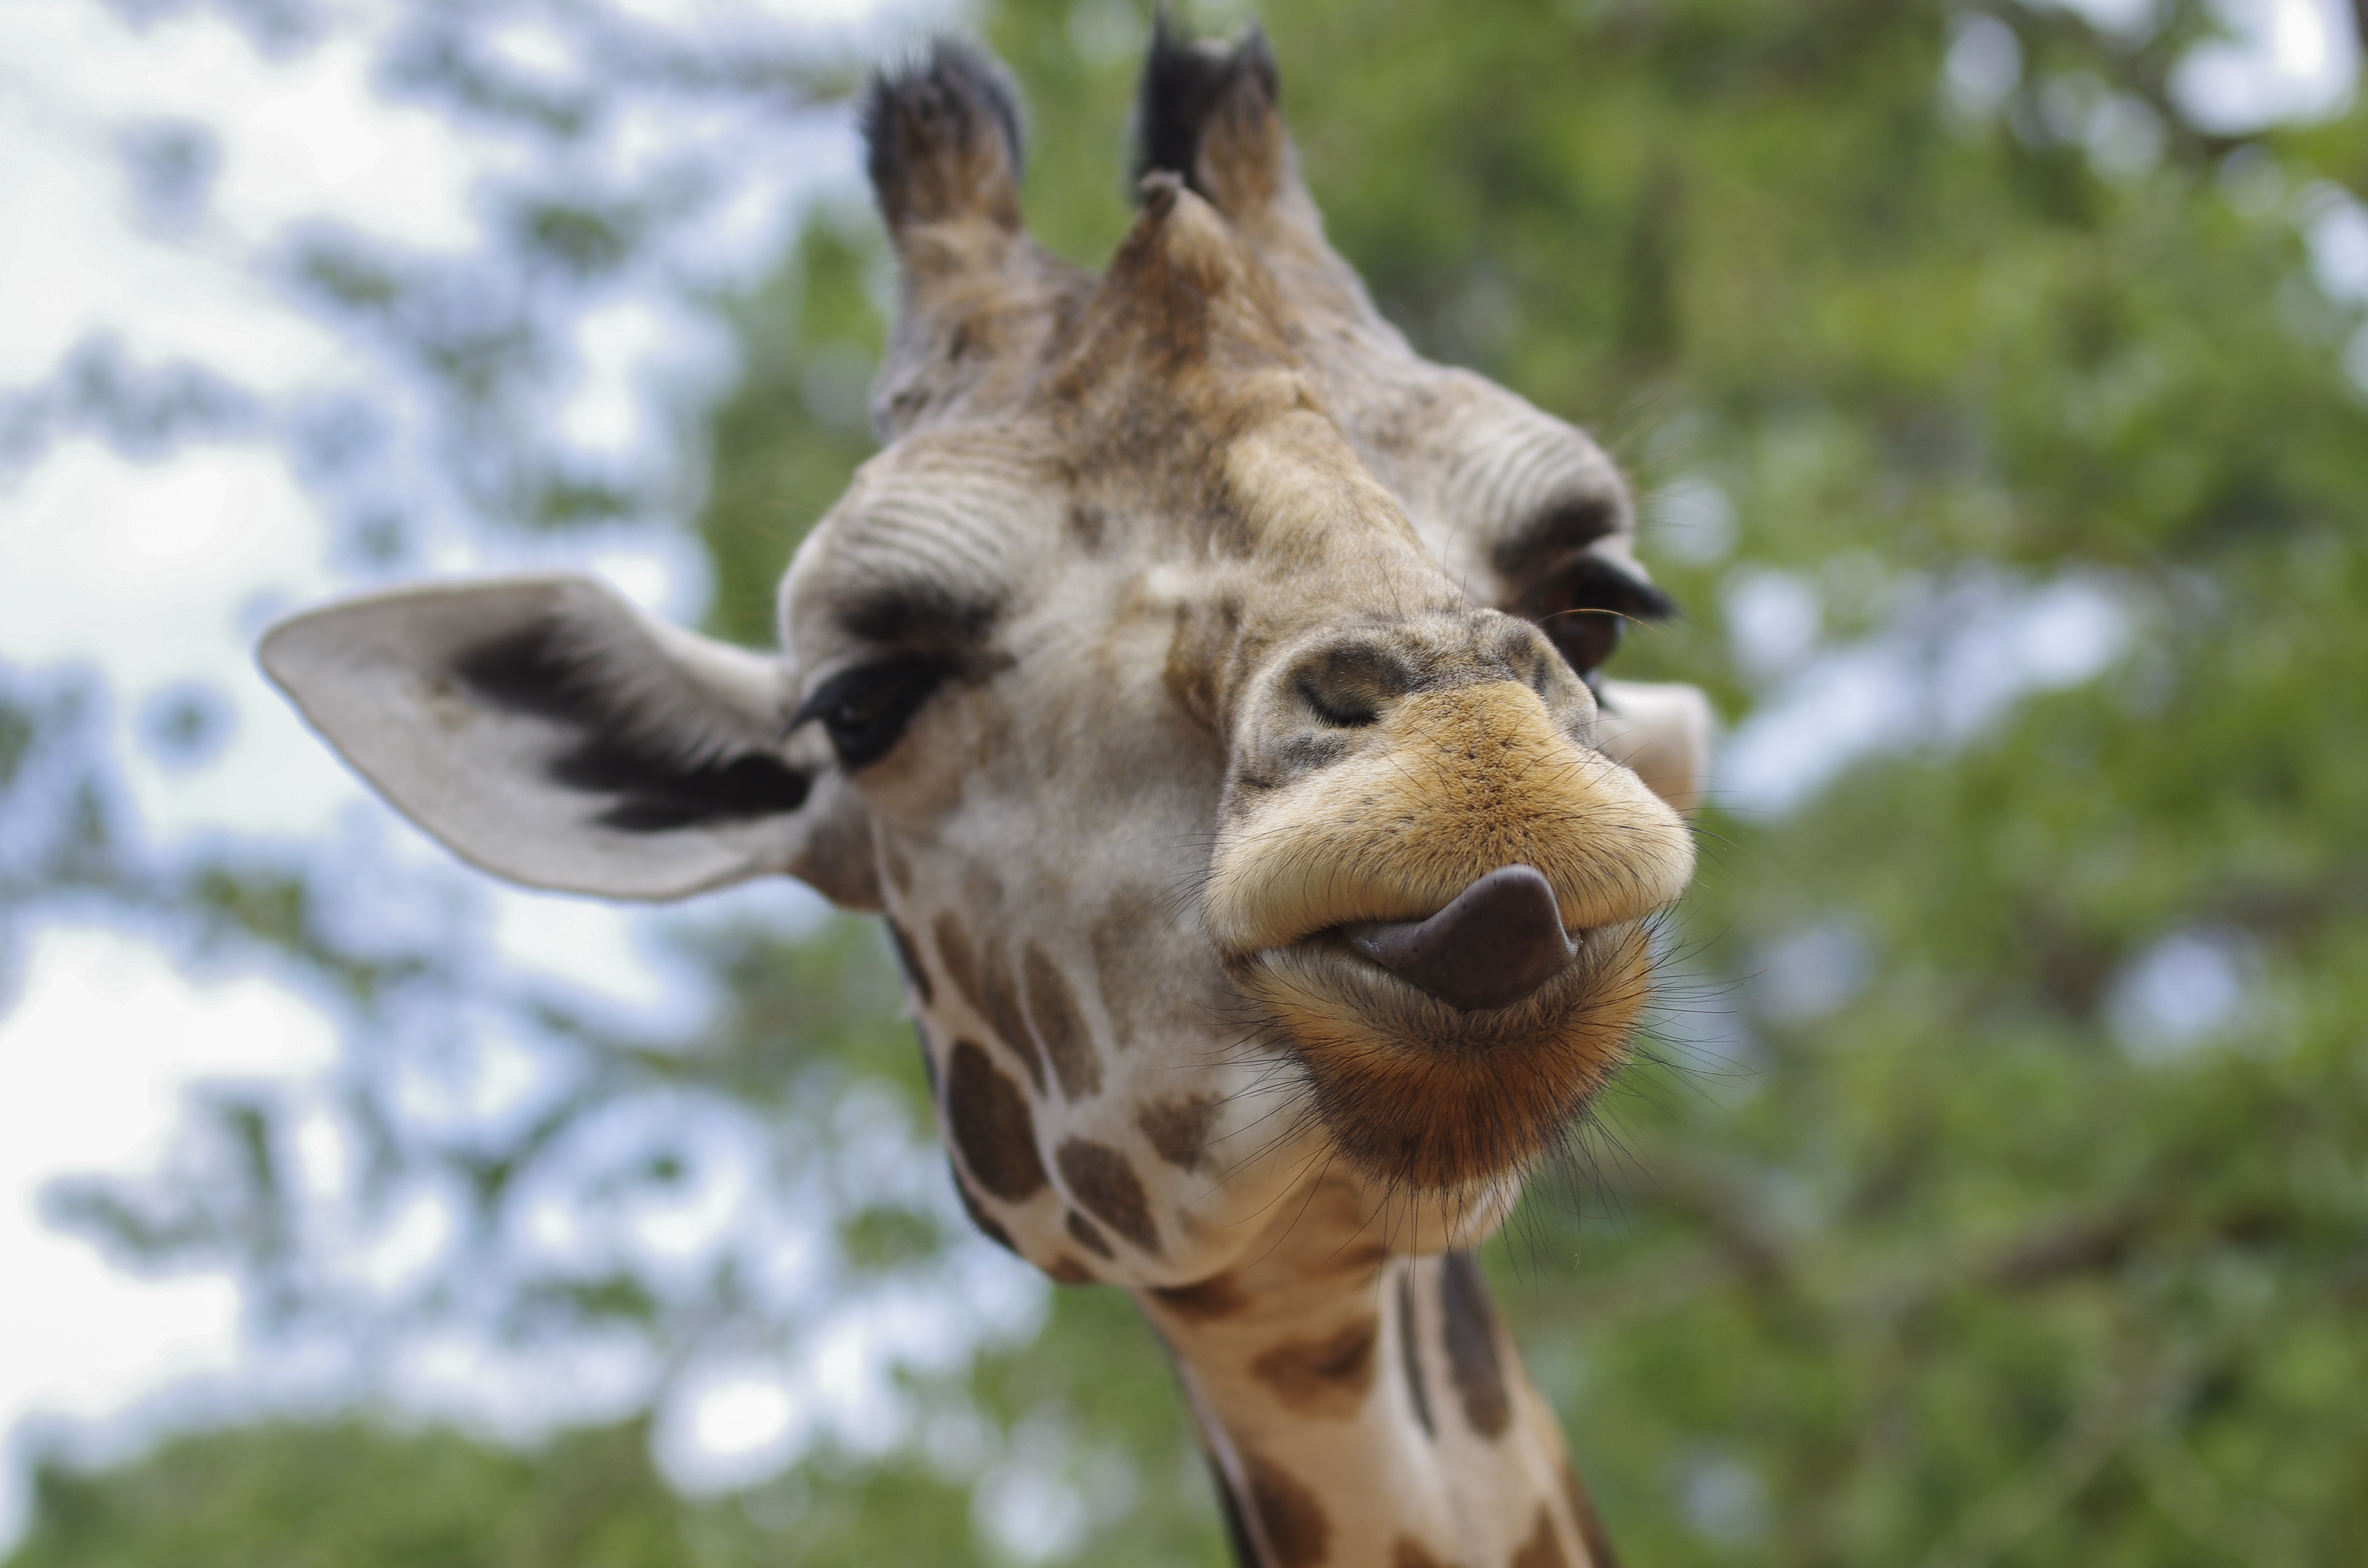 selective focus photography of giraffe